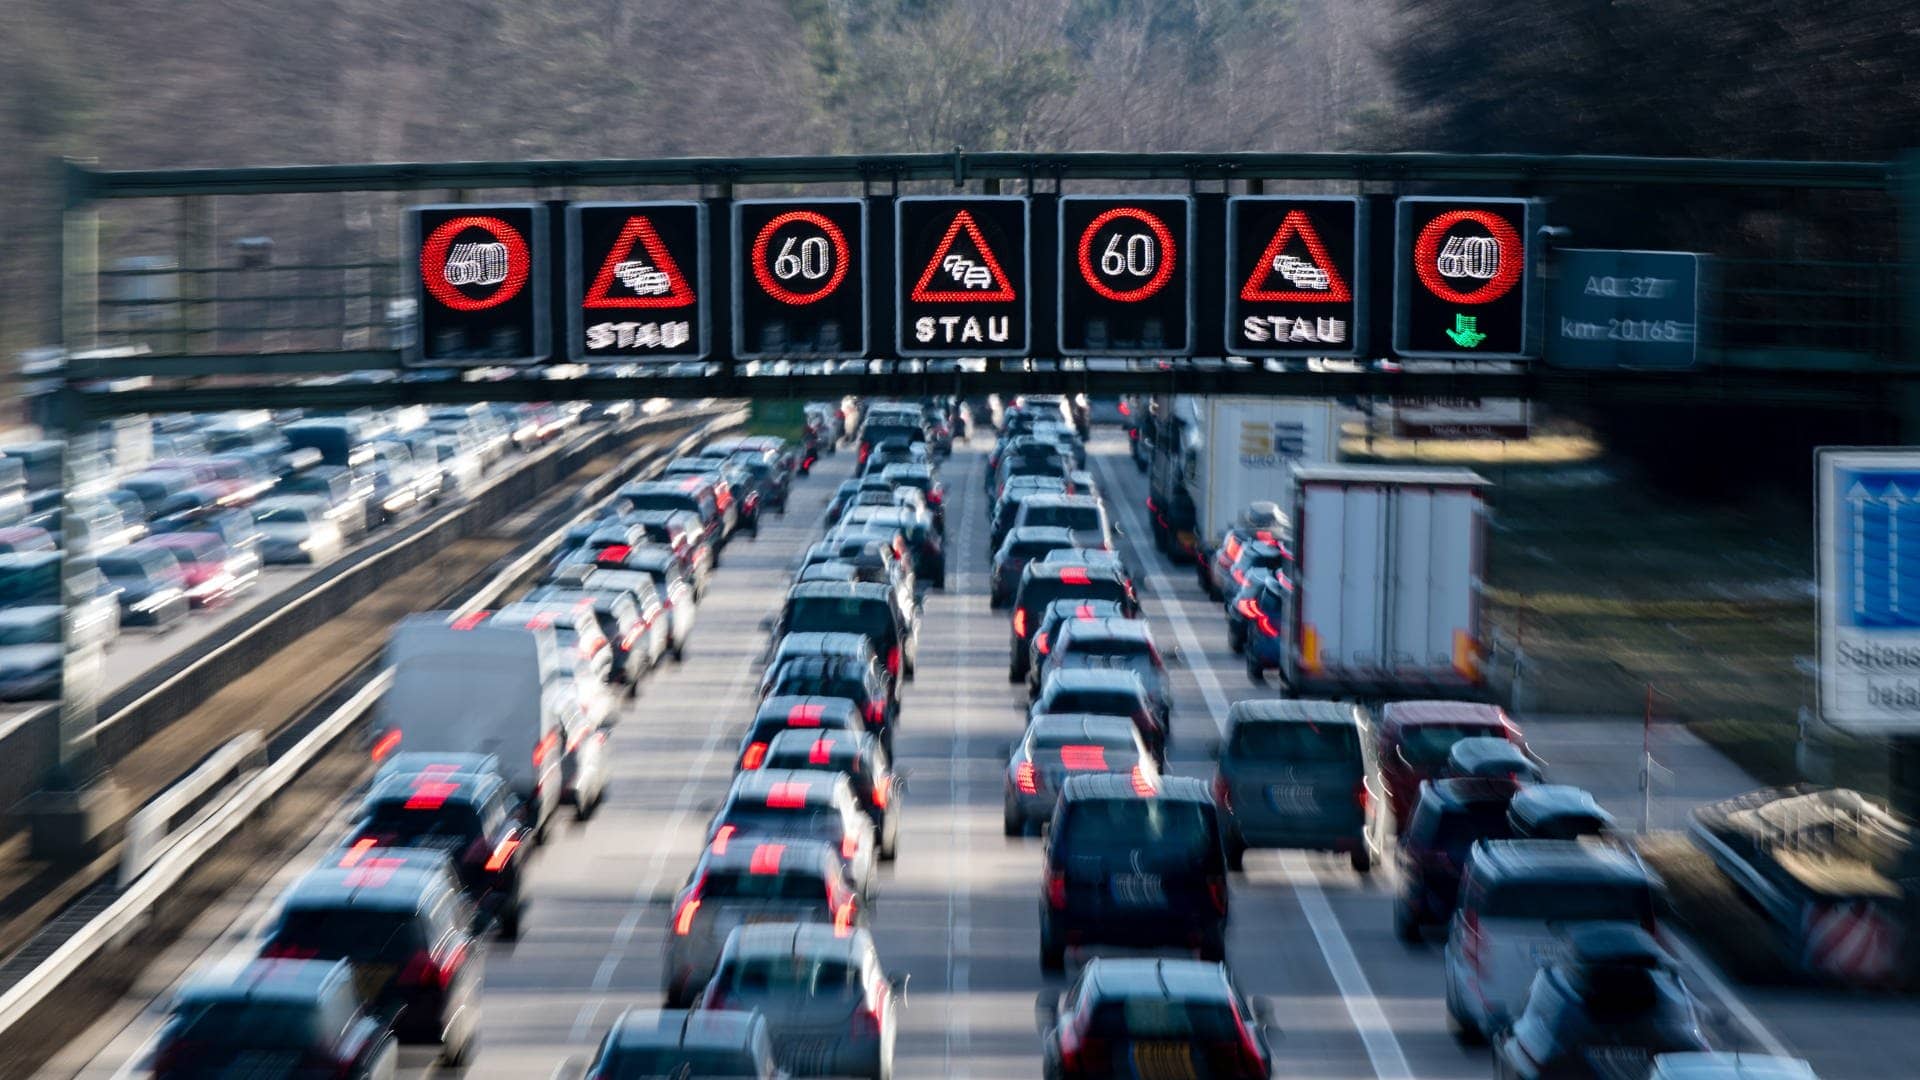 Stauprognose ist da: Auf diesen Autobahnen soll es jetzt am schlimmsten werden